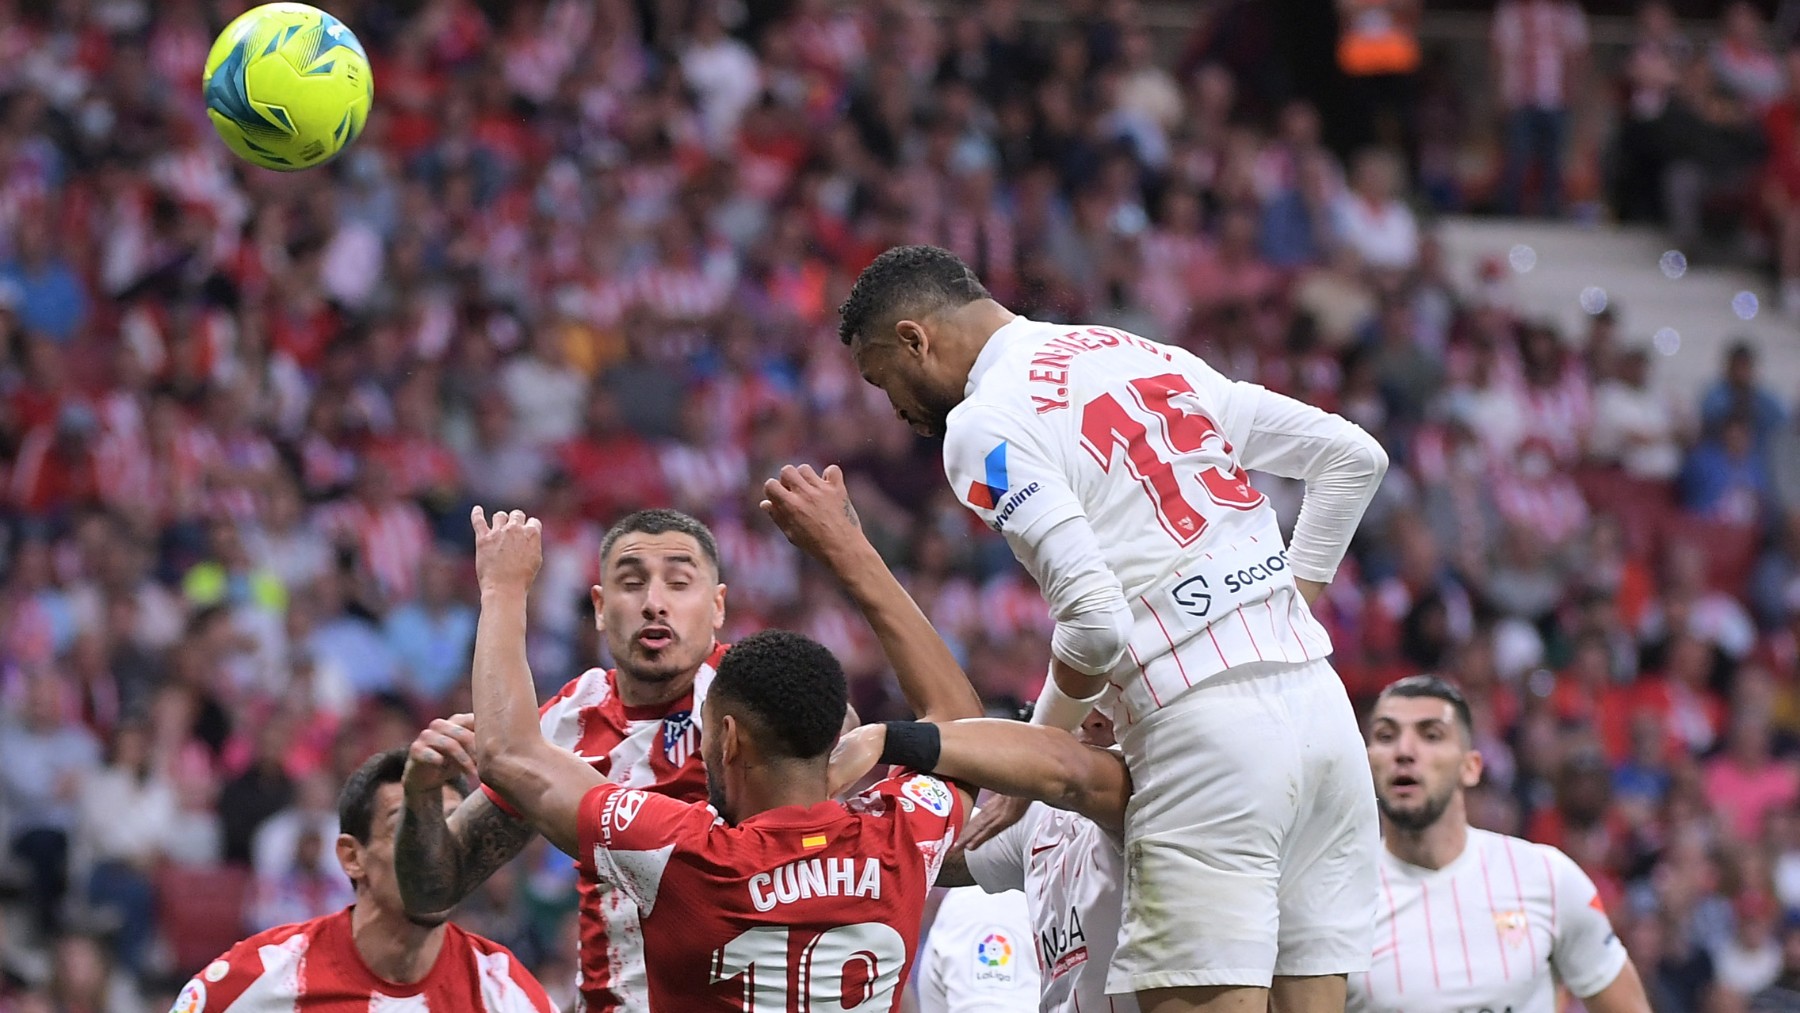 En-Nesyri cabecea un centro durante el Atlético-Sevilla. (AFP)